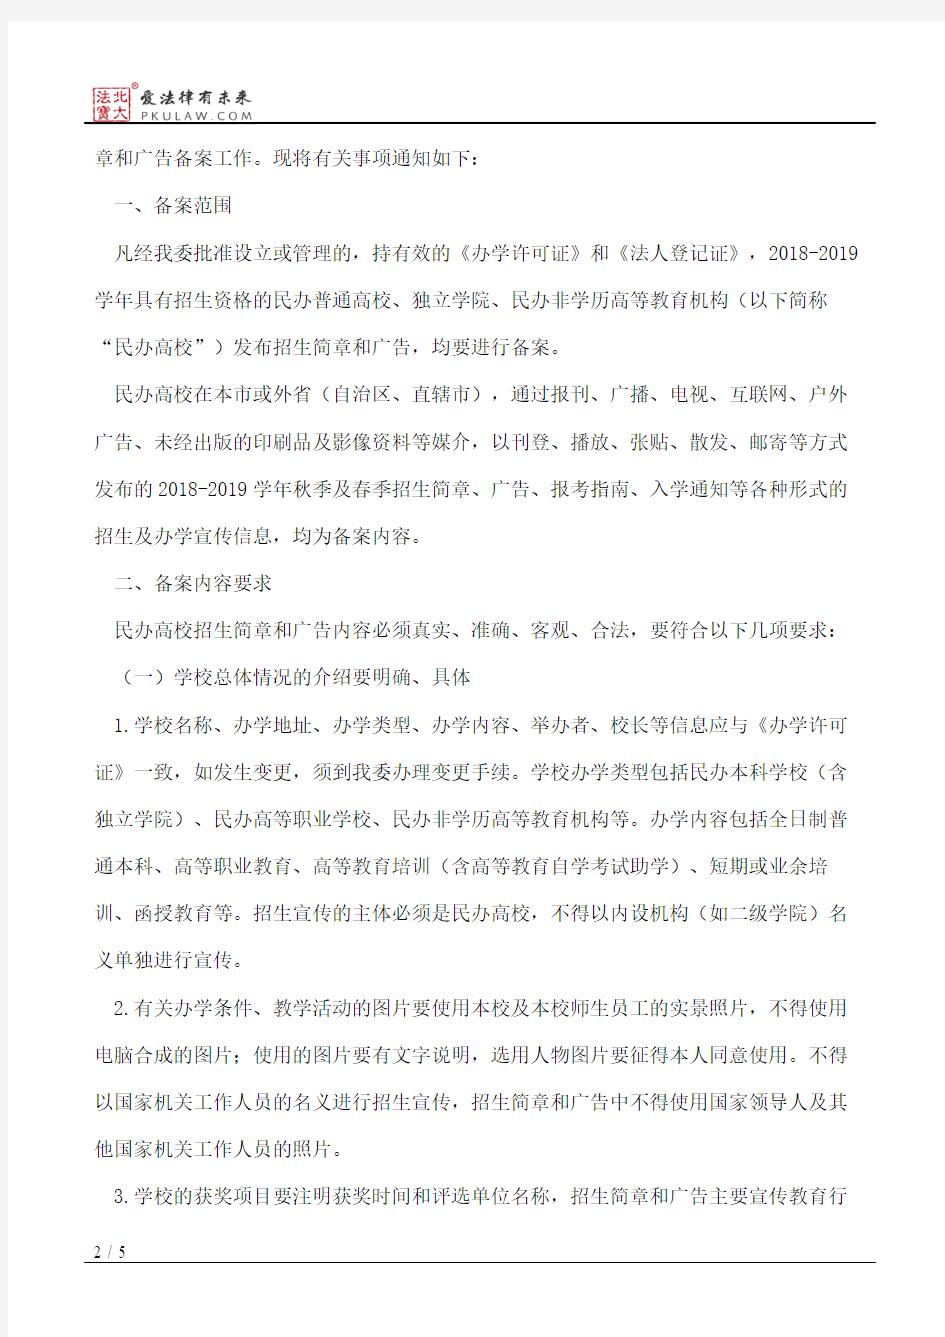 北京市教育委员会关于北京市教育委员会关于做好2018―2019学年民办